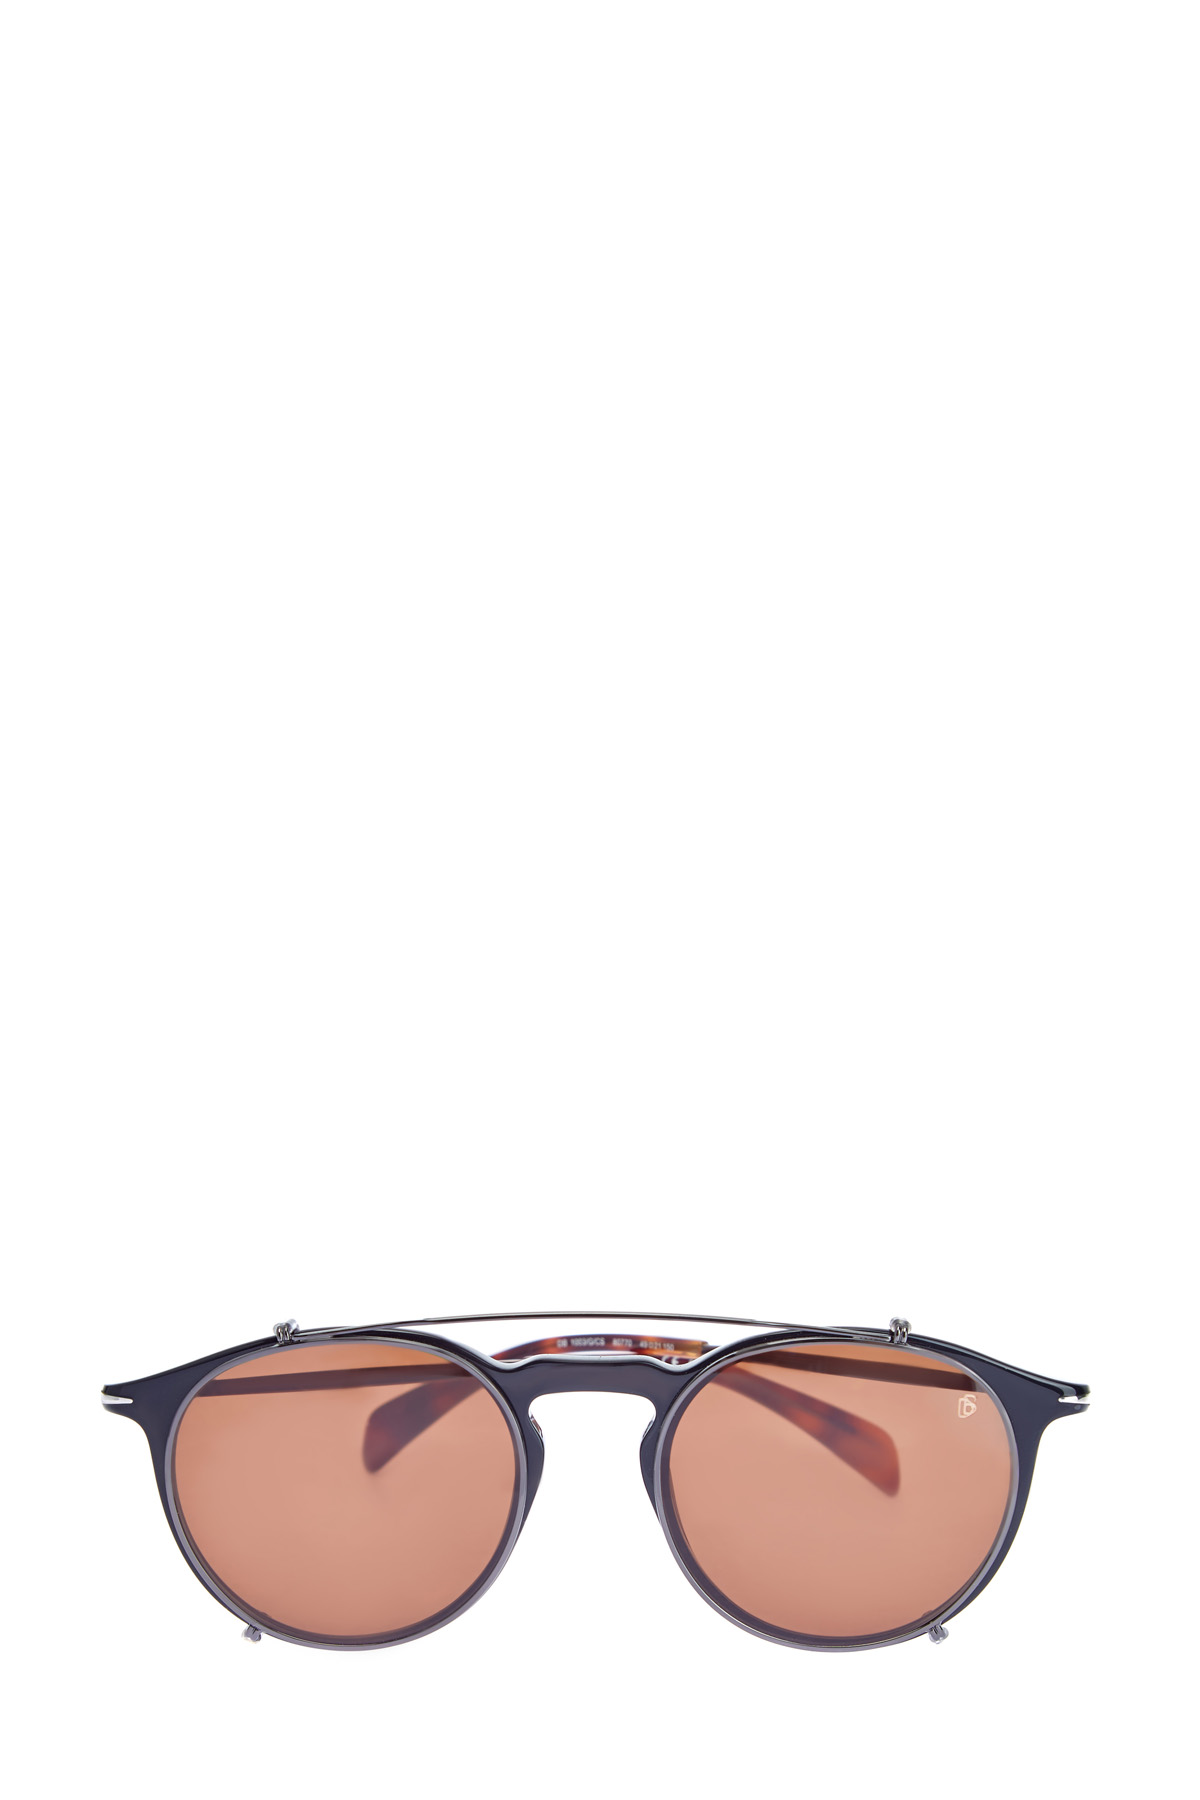 Очки с фирменными клипсами и рутениевым напылением DAVID BECKHAM, цвет коричневый, размер 40 - фото 1